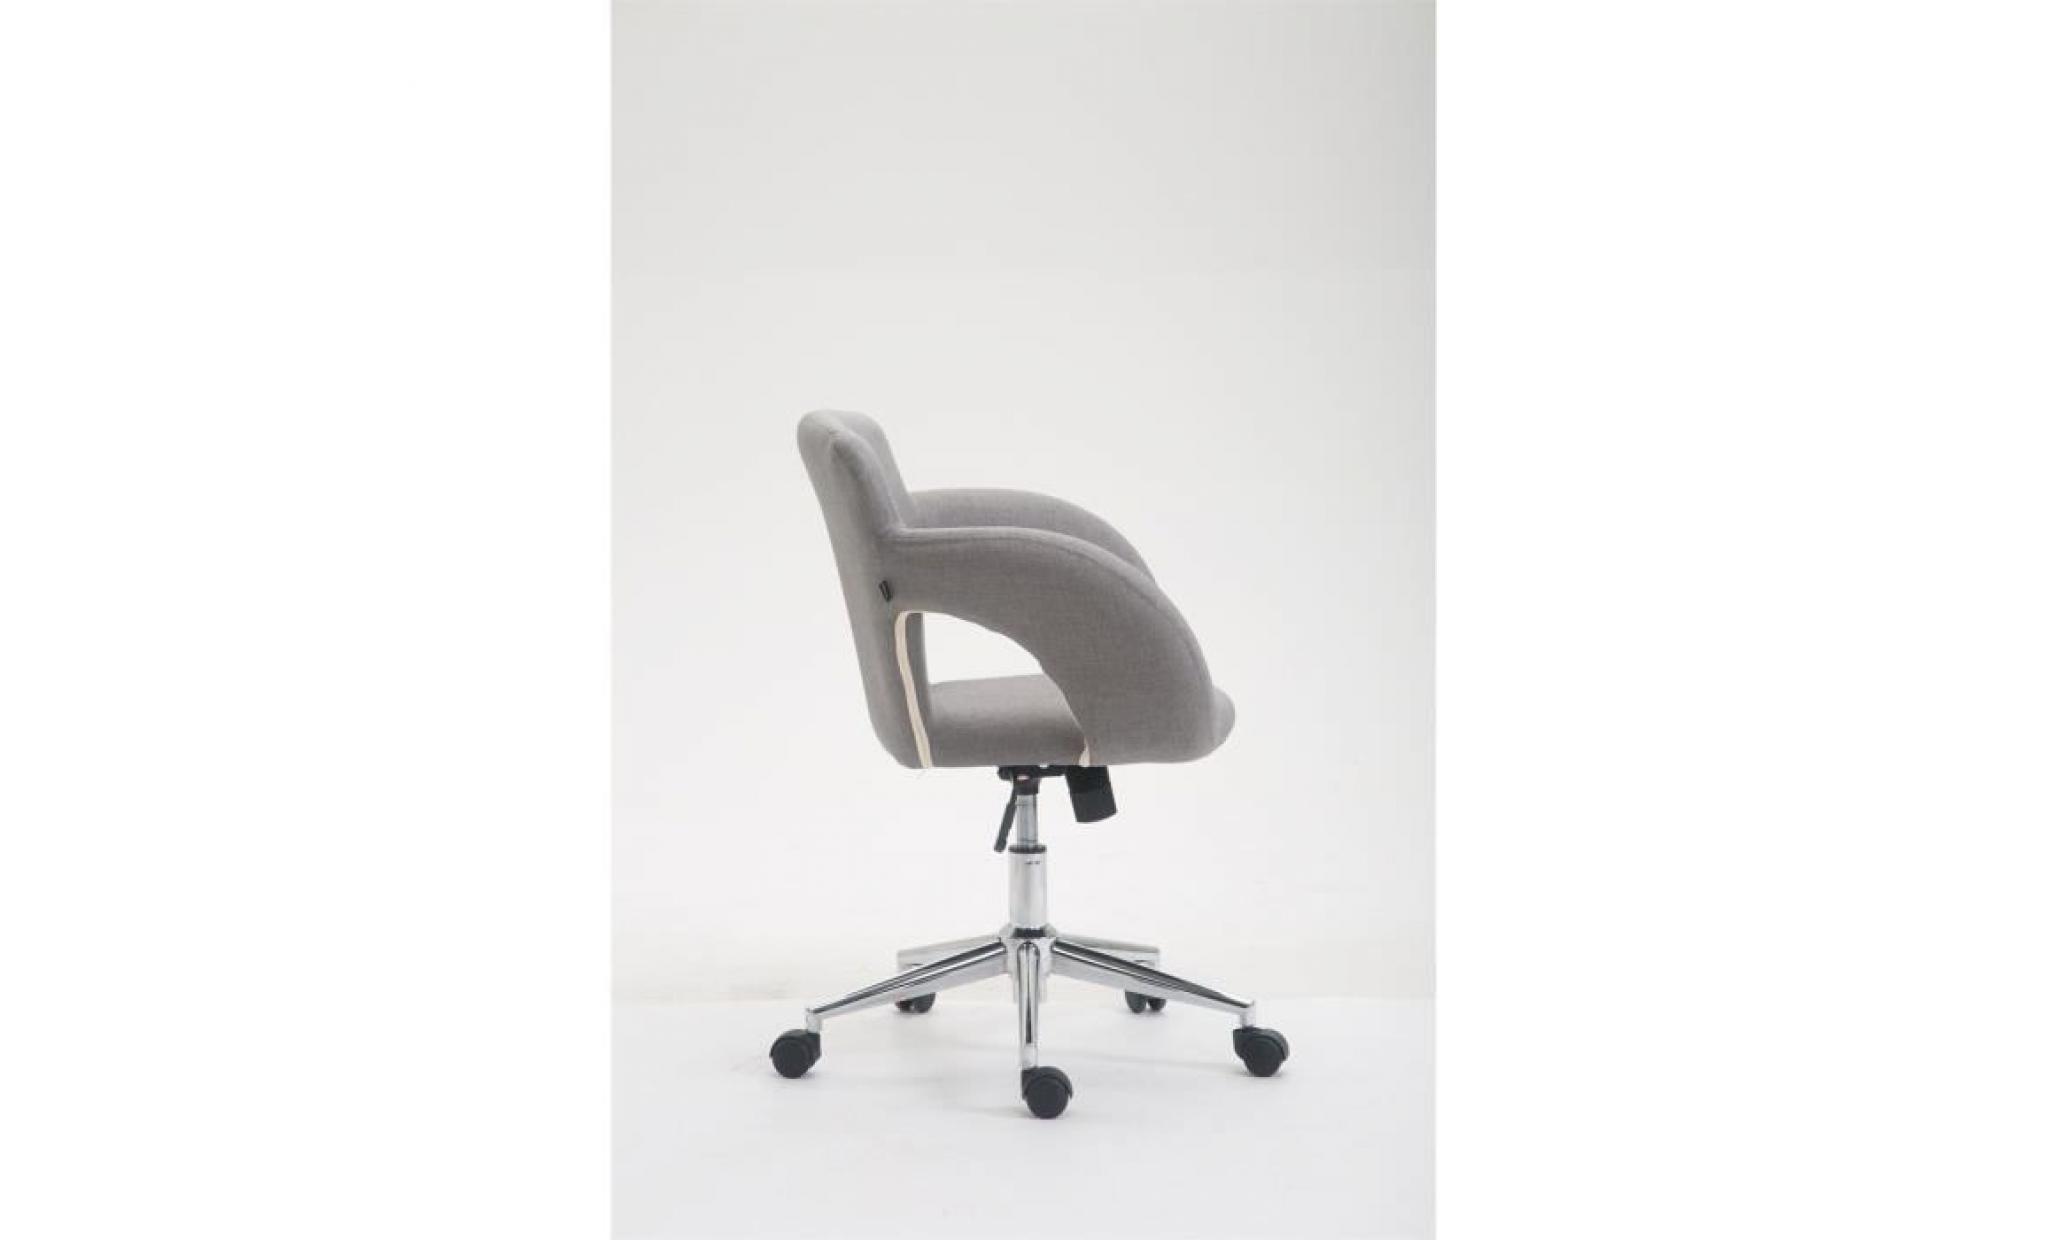 clp chaise de bureau edison en tissu, fauteuil de bureau avec accoudoirs, mécanisme d'inclinaison intégré, hauteur ajustable pas cher